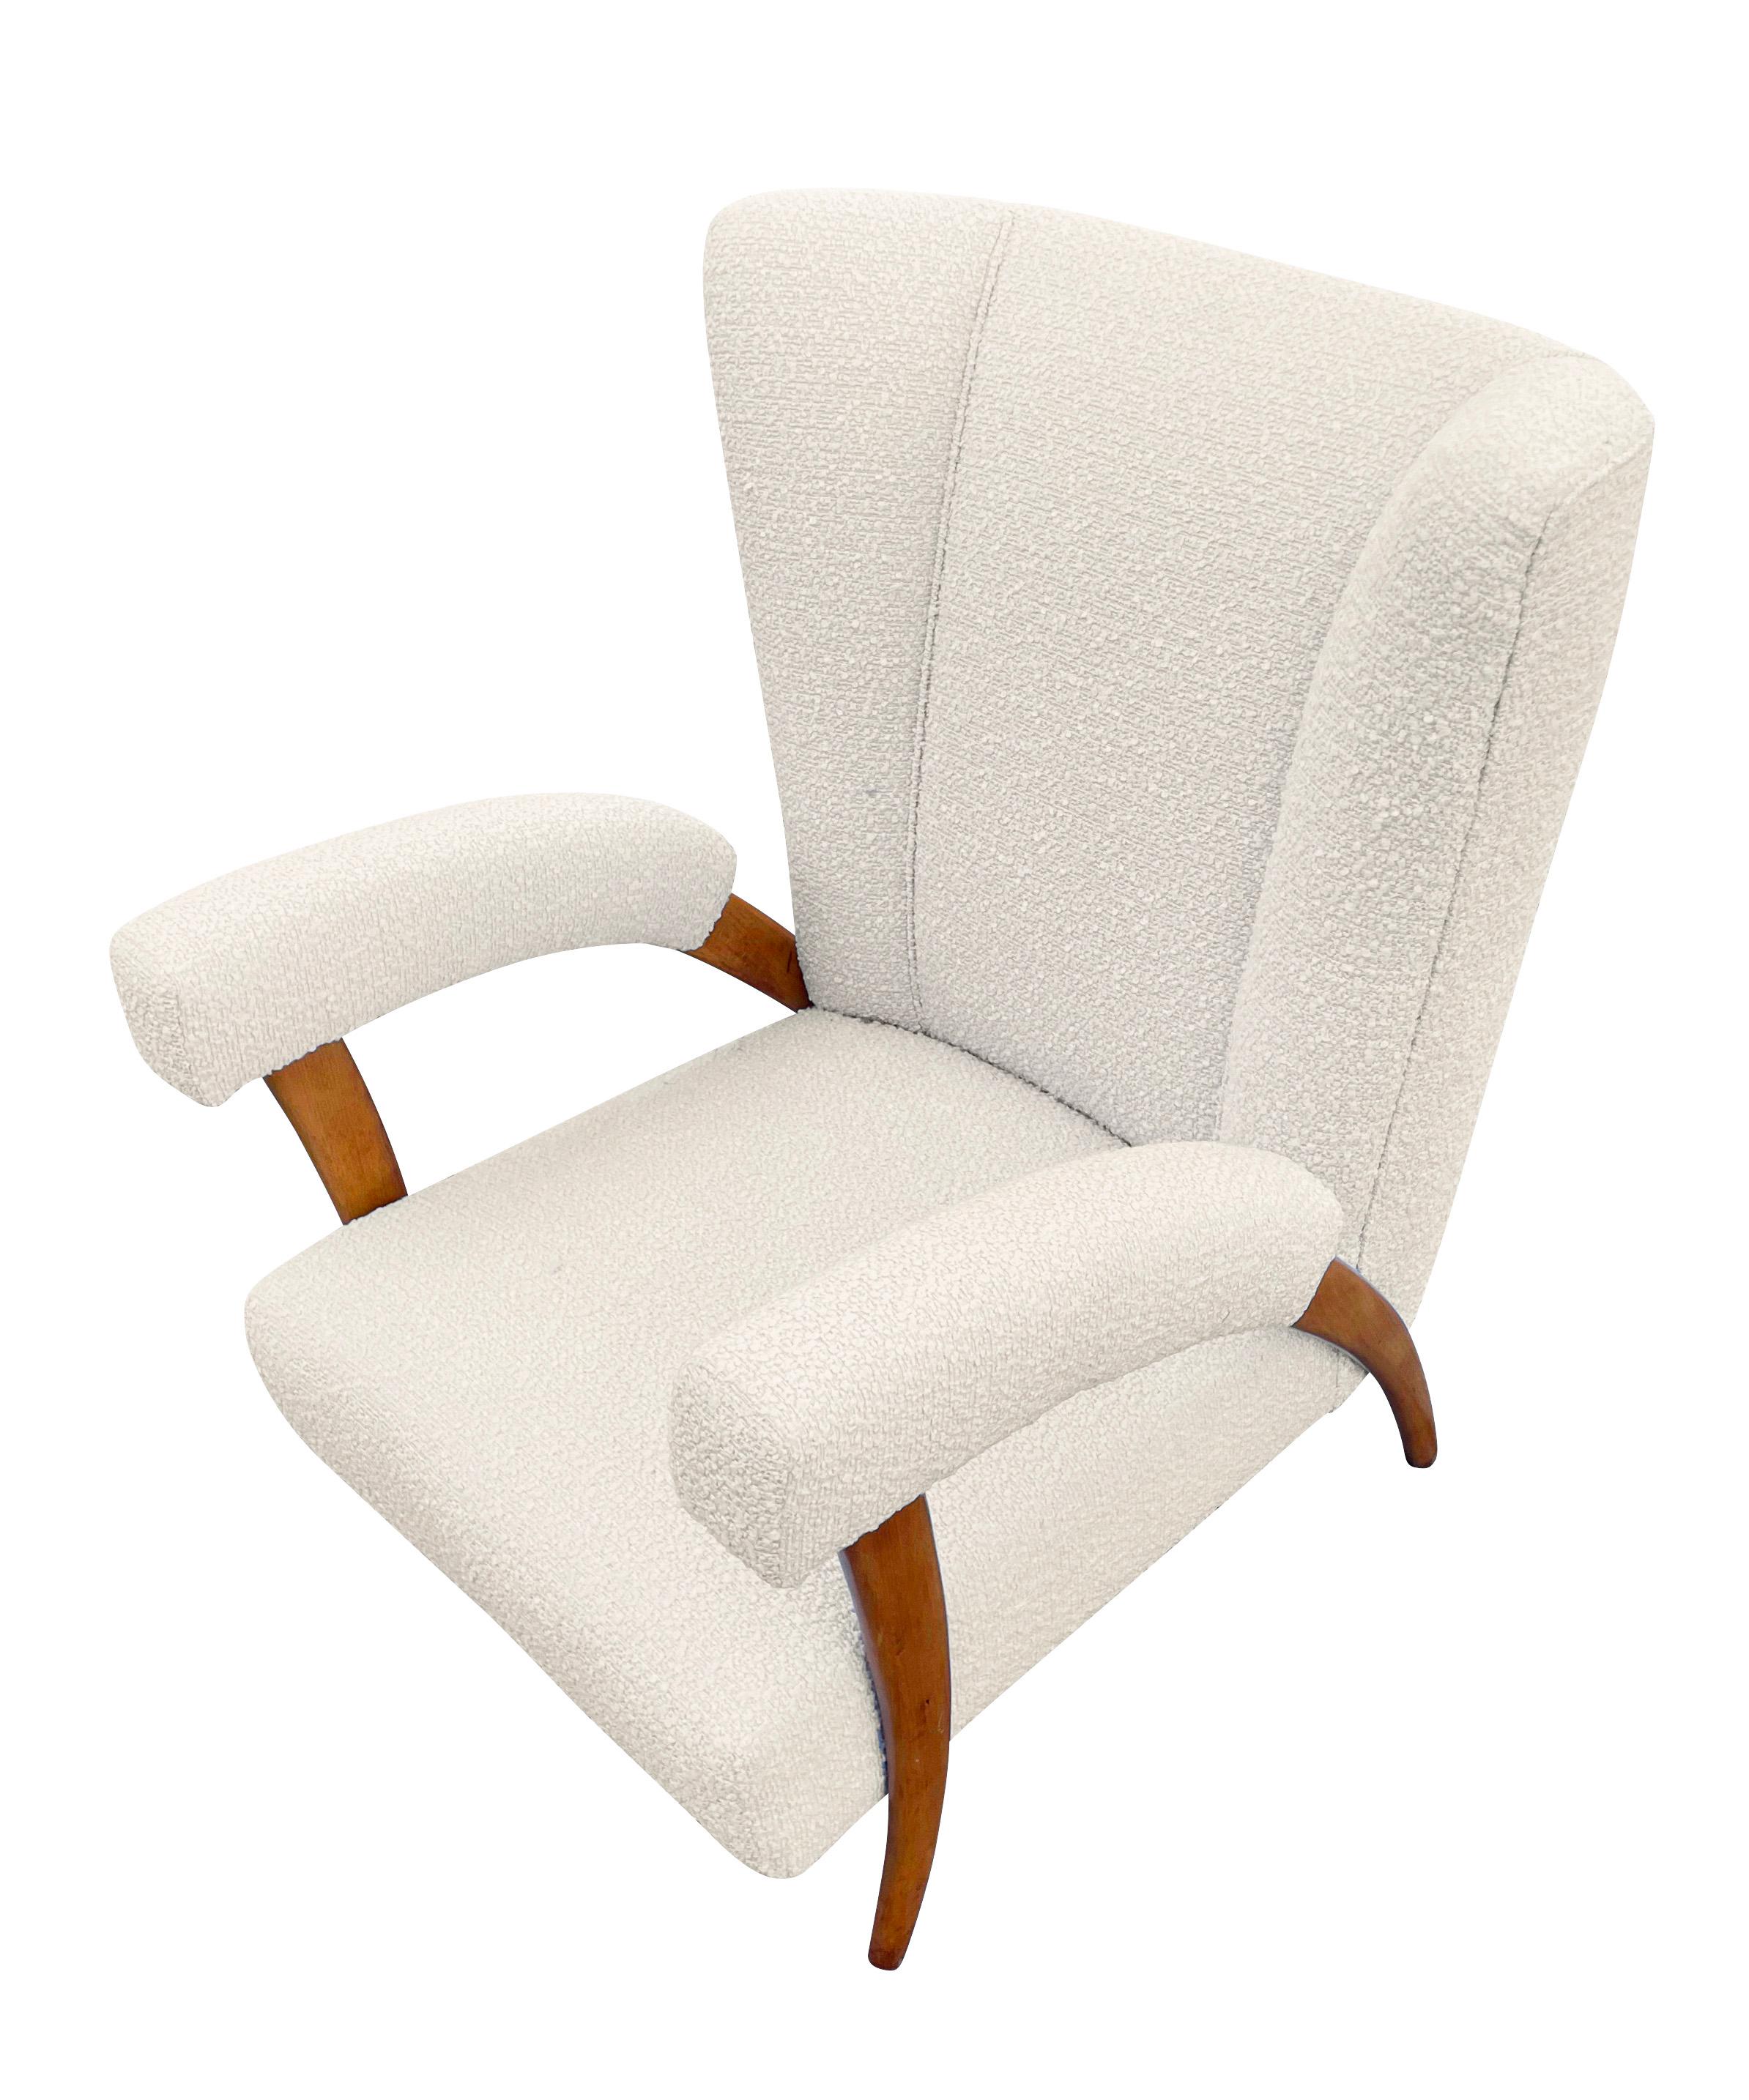 Paire de fauteuils attribués à Paolo Buffa, Italie, années 1950.
$9,900.00.
Paire de magnifiques chaises de salon Paolo Buffa des années 1950 avec des pieds en forme de 